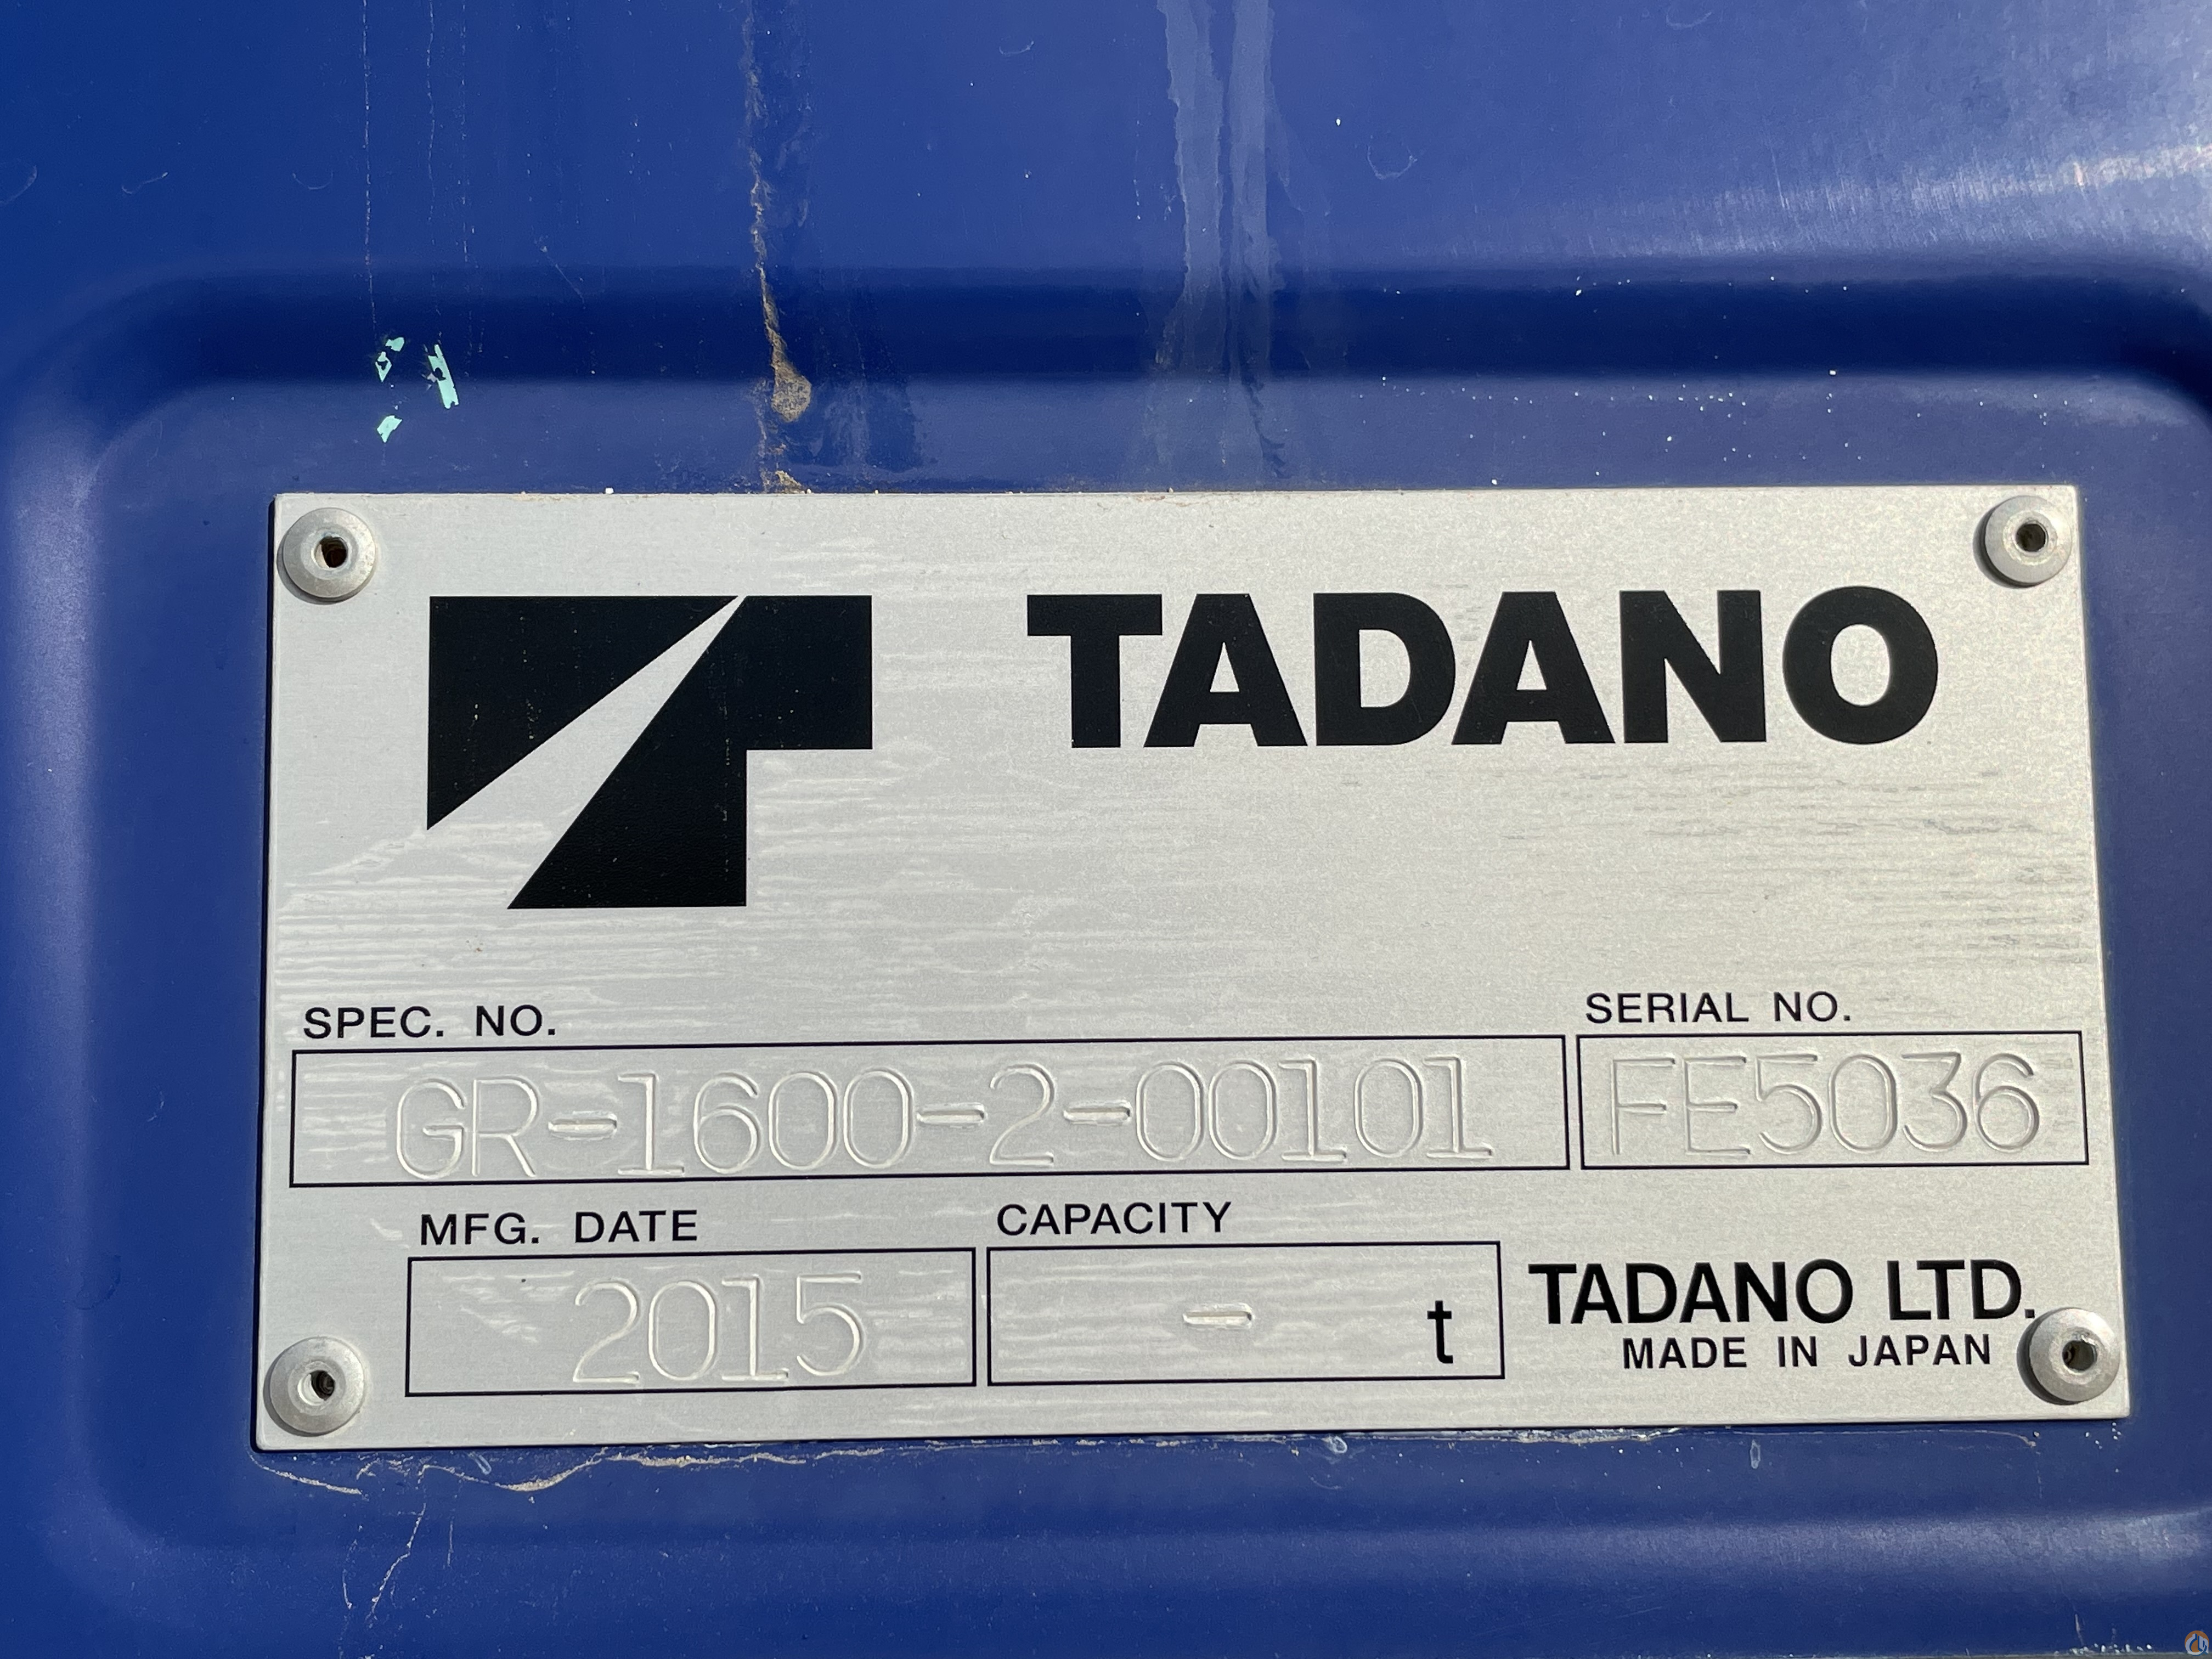 Tadano GR-1600XL-2